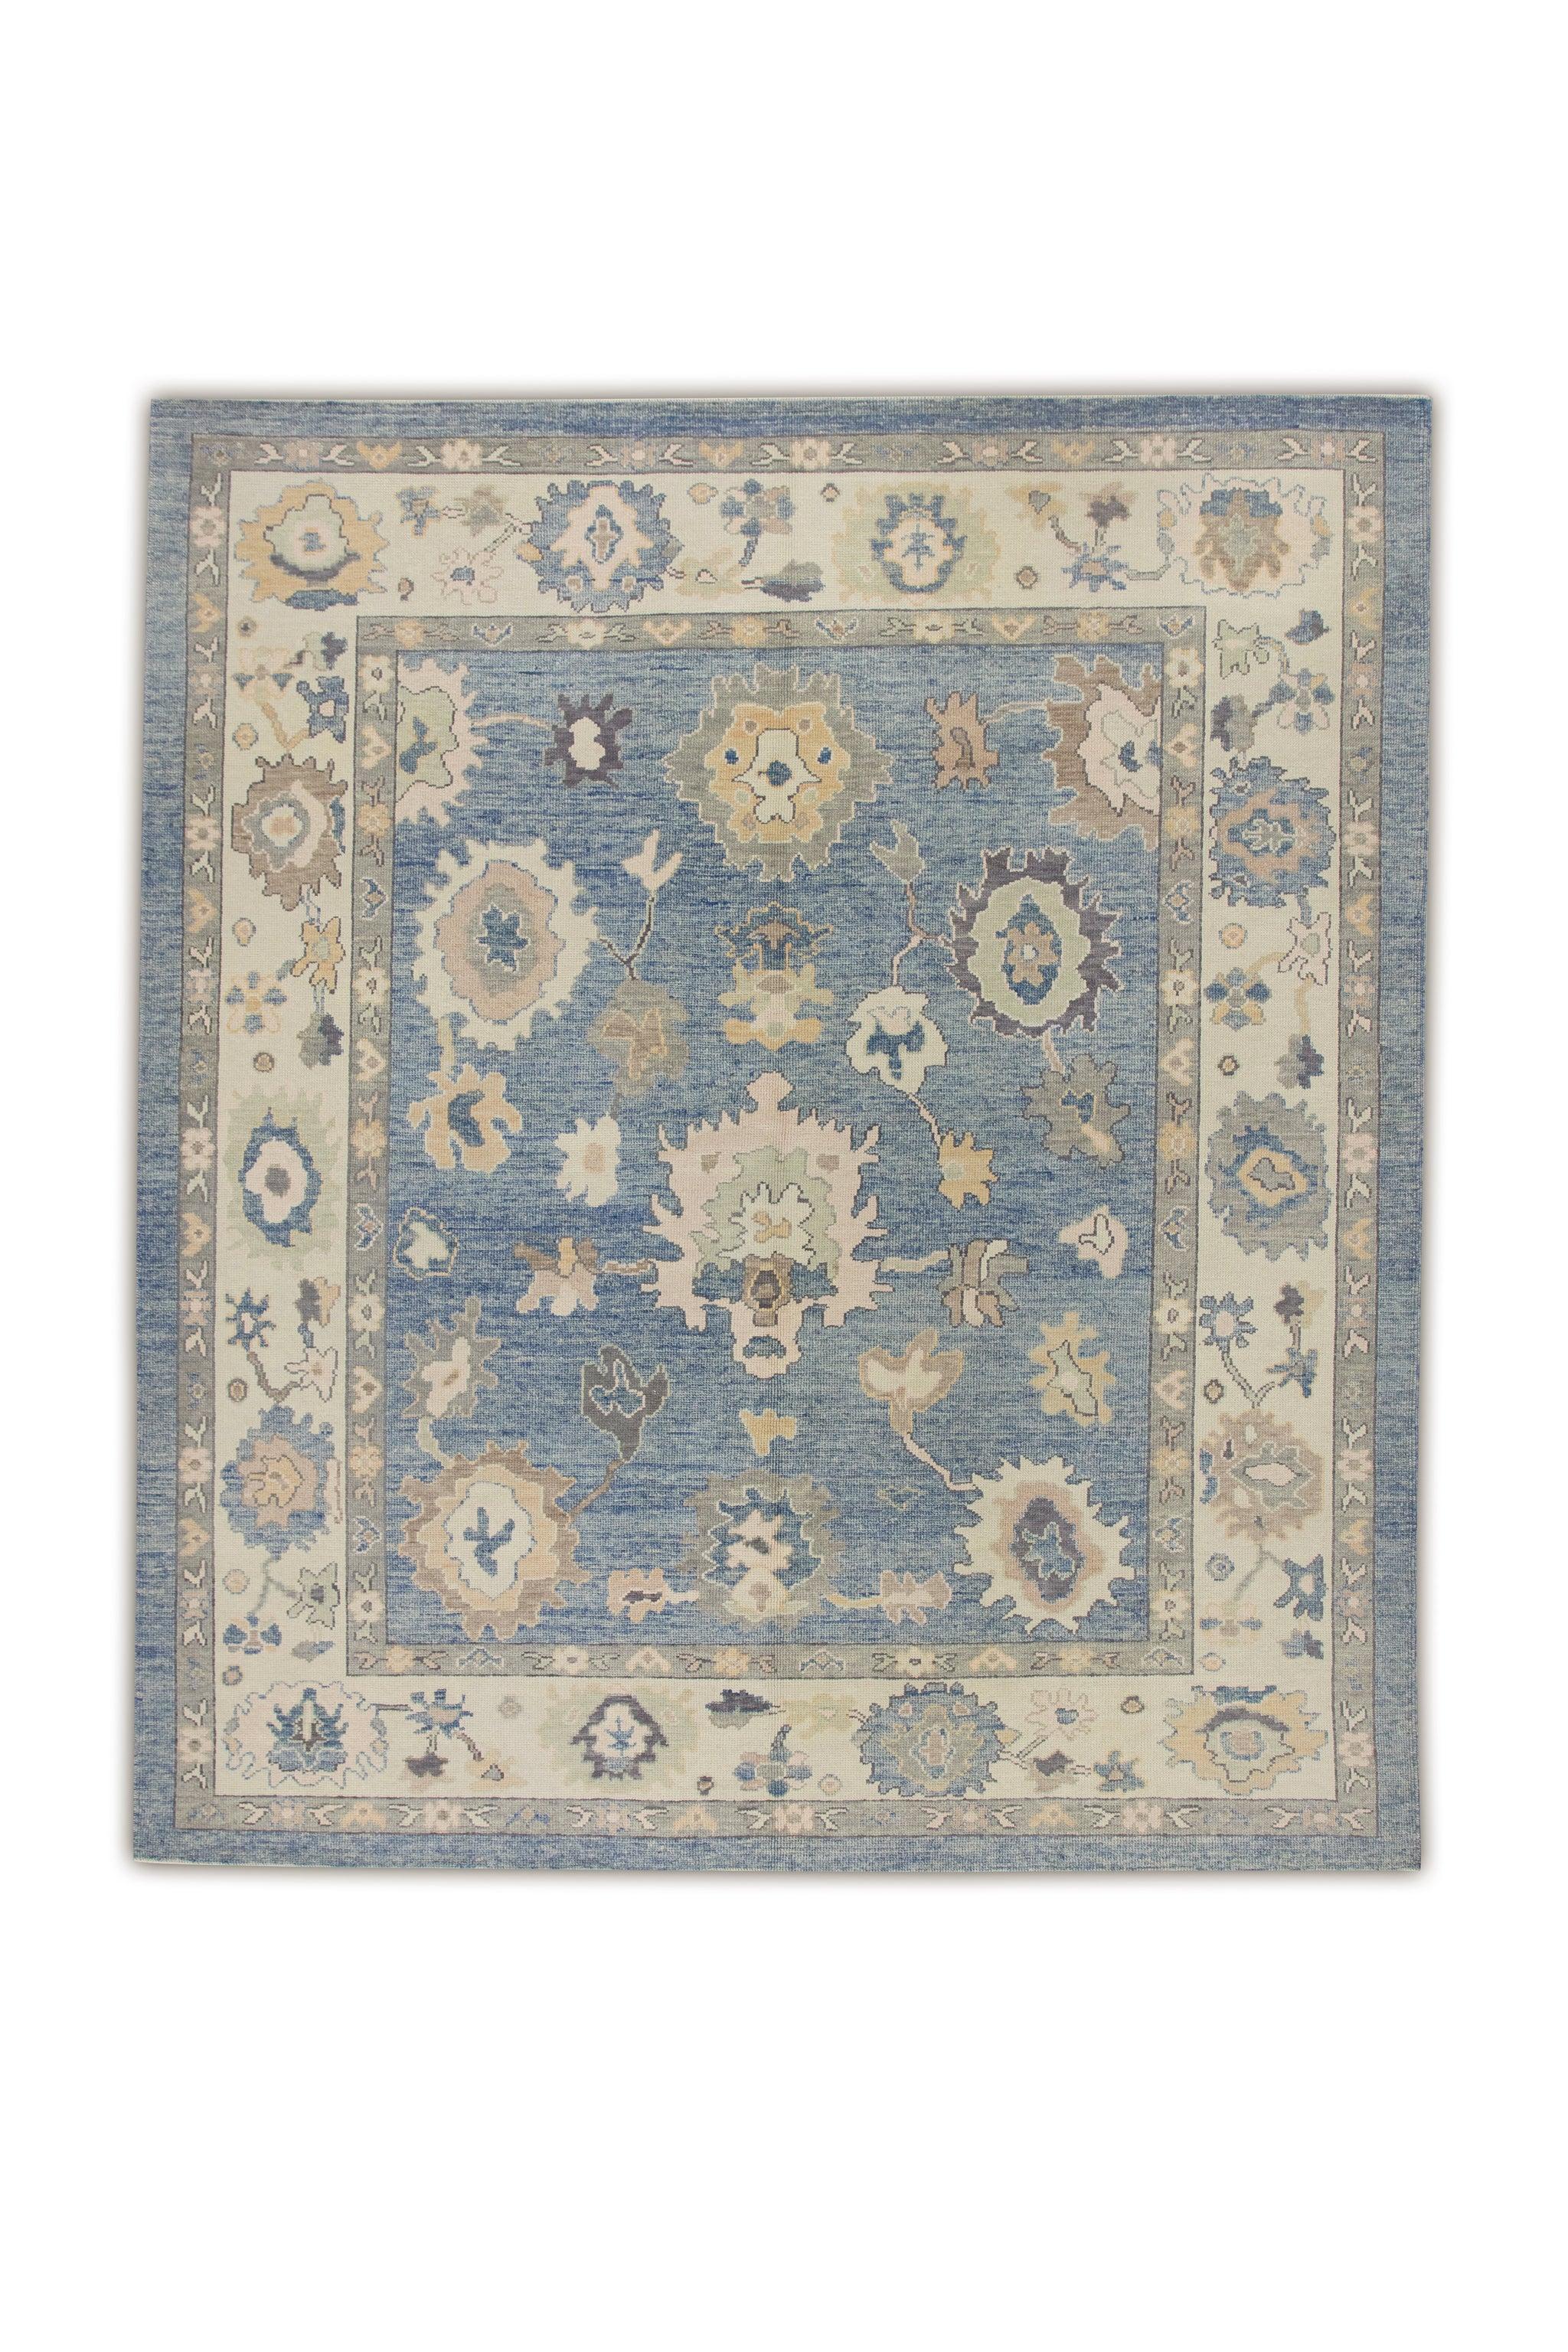 Blue Multicolor Floral Design Handwoven Wool Turkish Oushak Rug 8'3